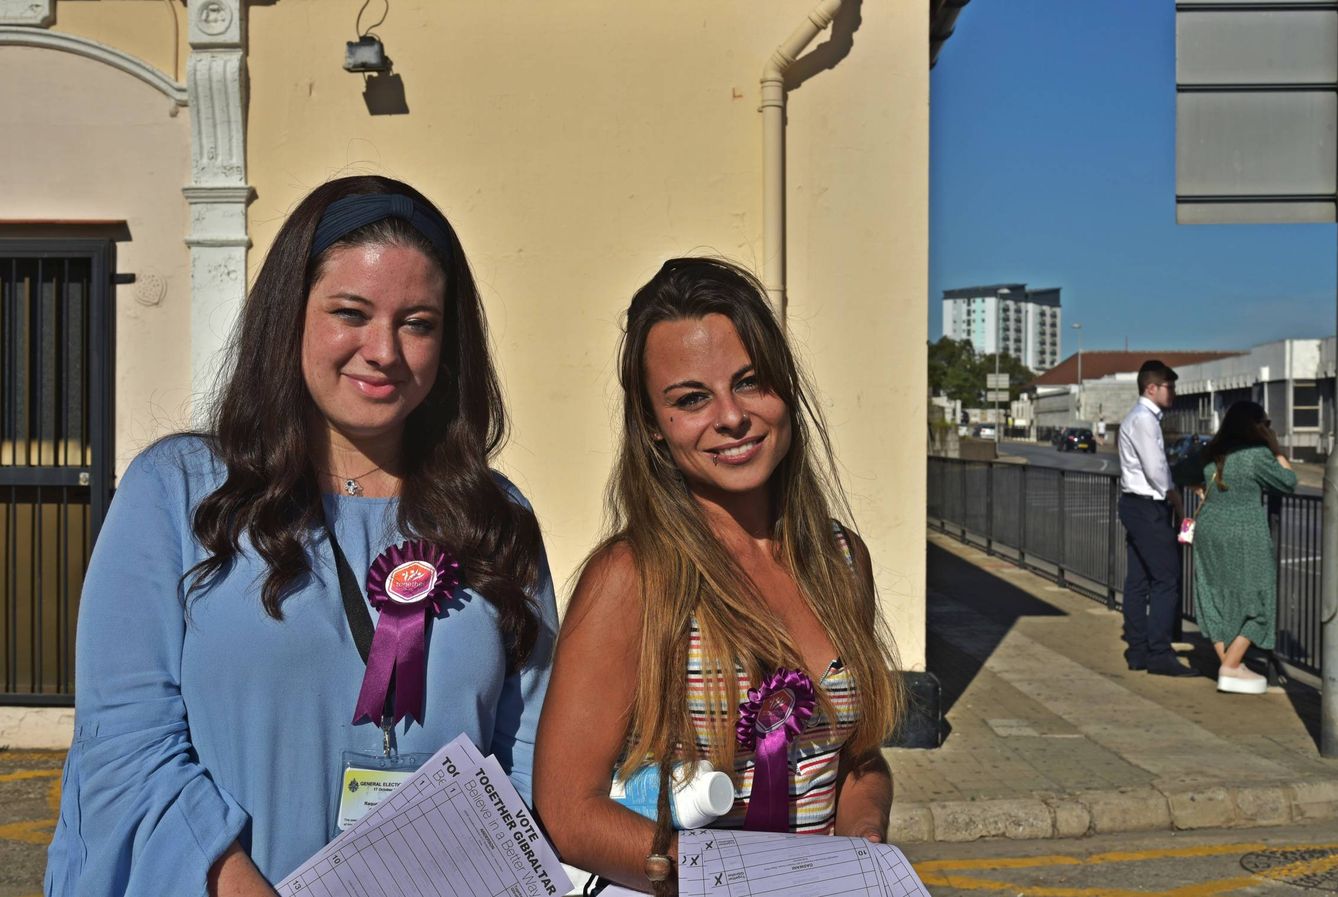 Dos simpatizantes del partido Together Gibraltar, en la puerta de un colegio electoral. (Toñi Guerrero)